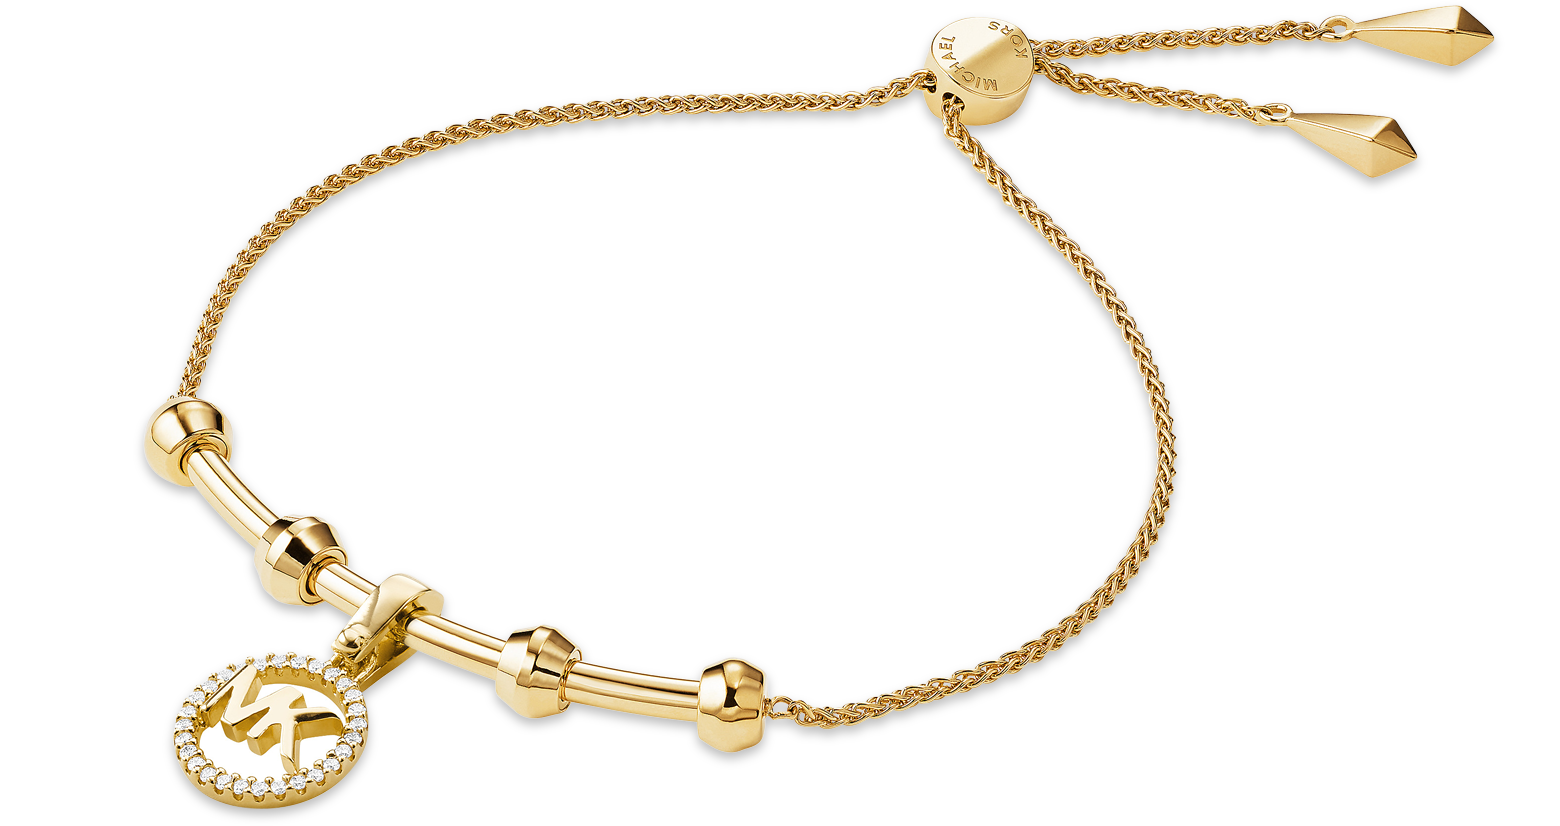 michael kors women's bracelet